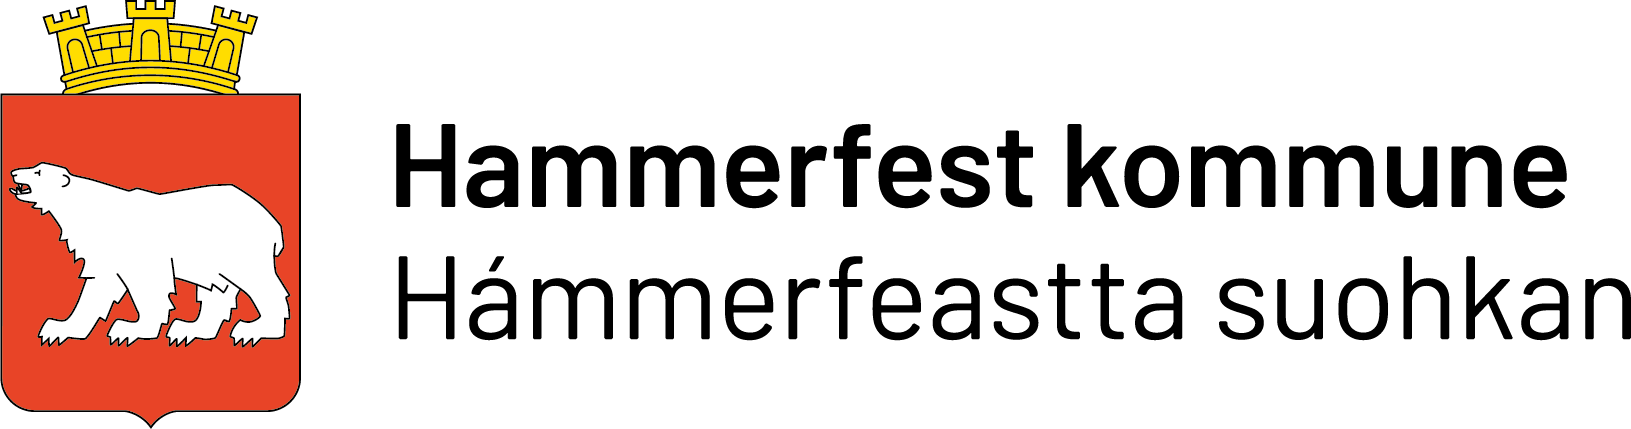 logo hammerfest kommune